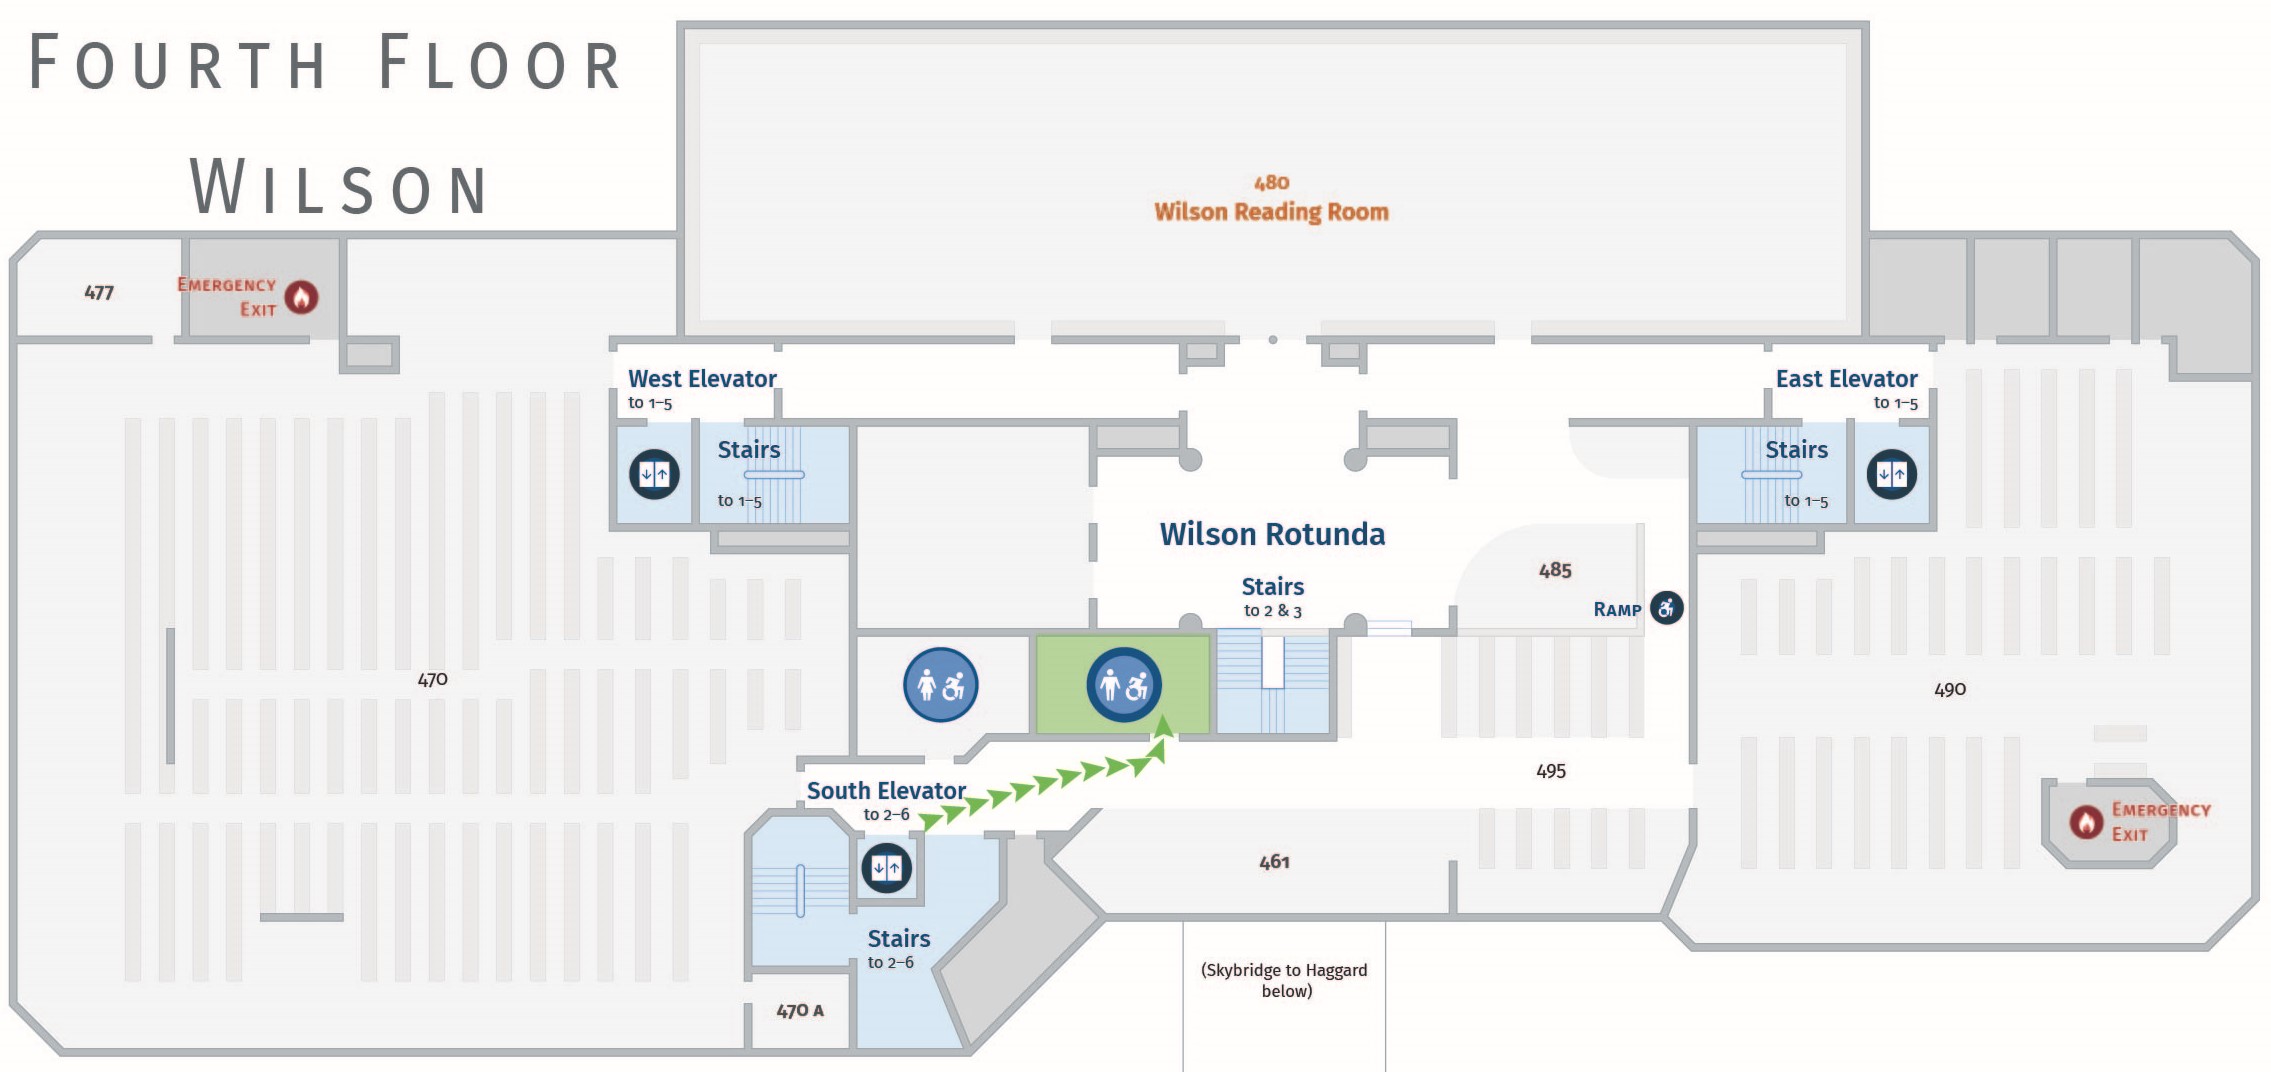 Floor plan, fourth floor of Wilson with path to men's restroom. Wilson 465.